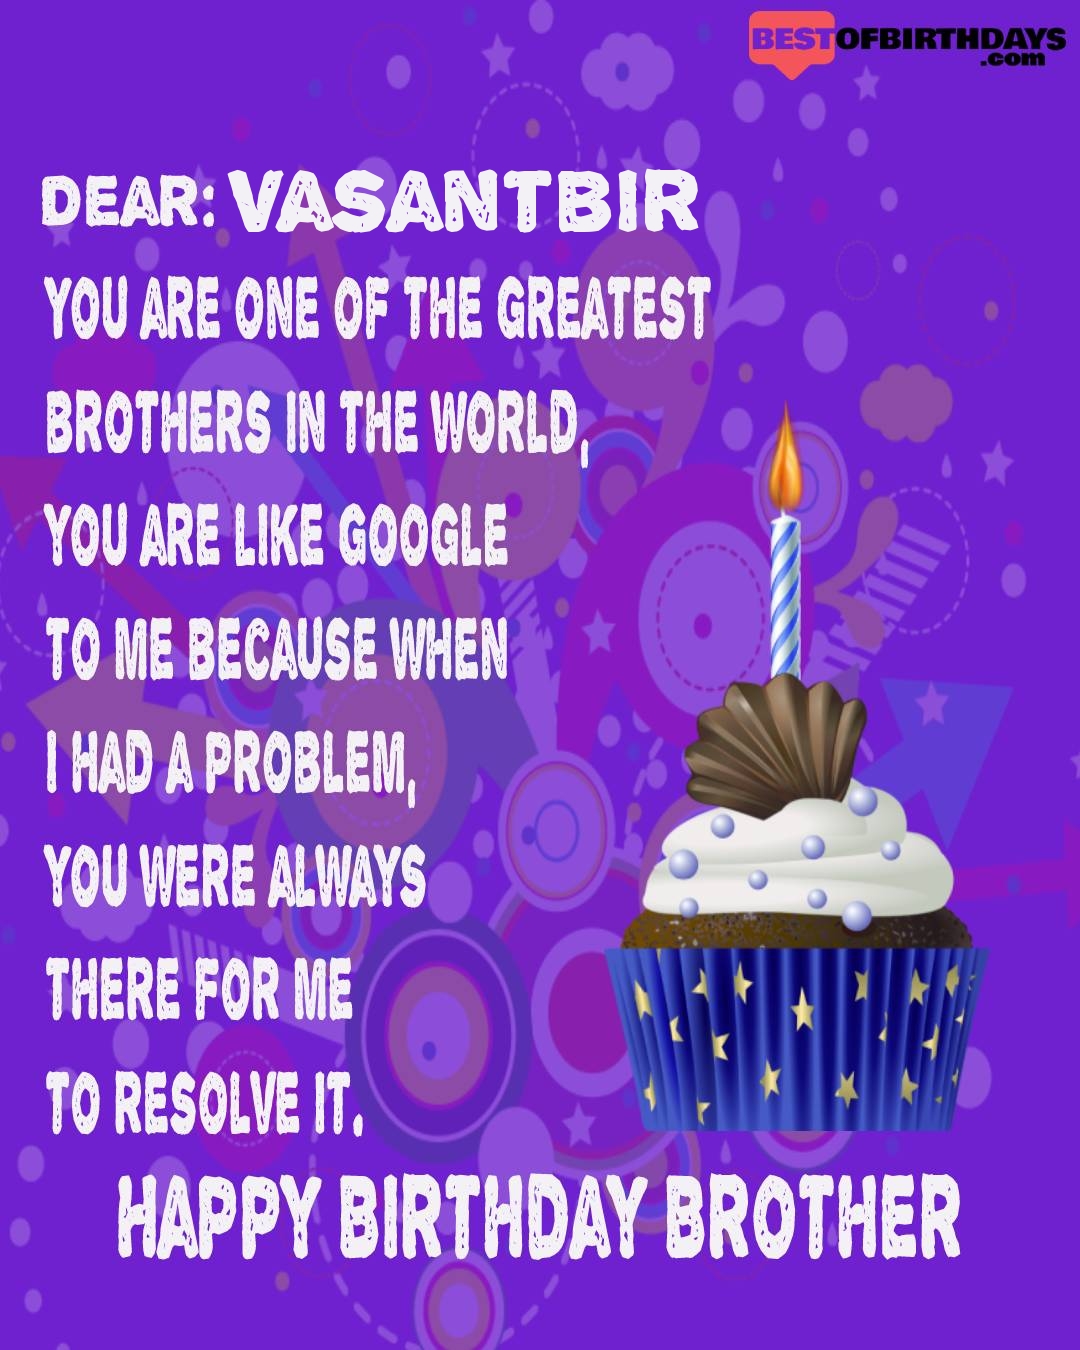 Happy birthday vasantbir bhai brother bro